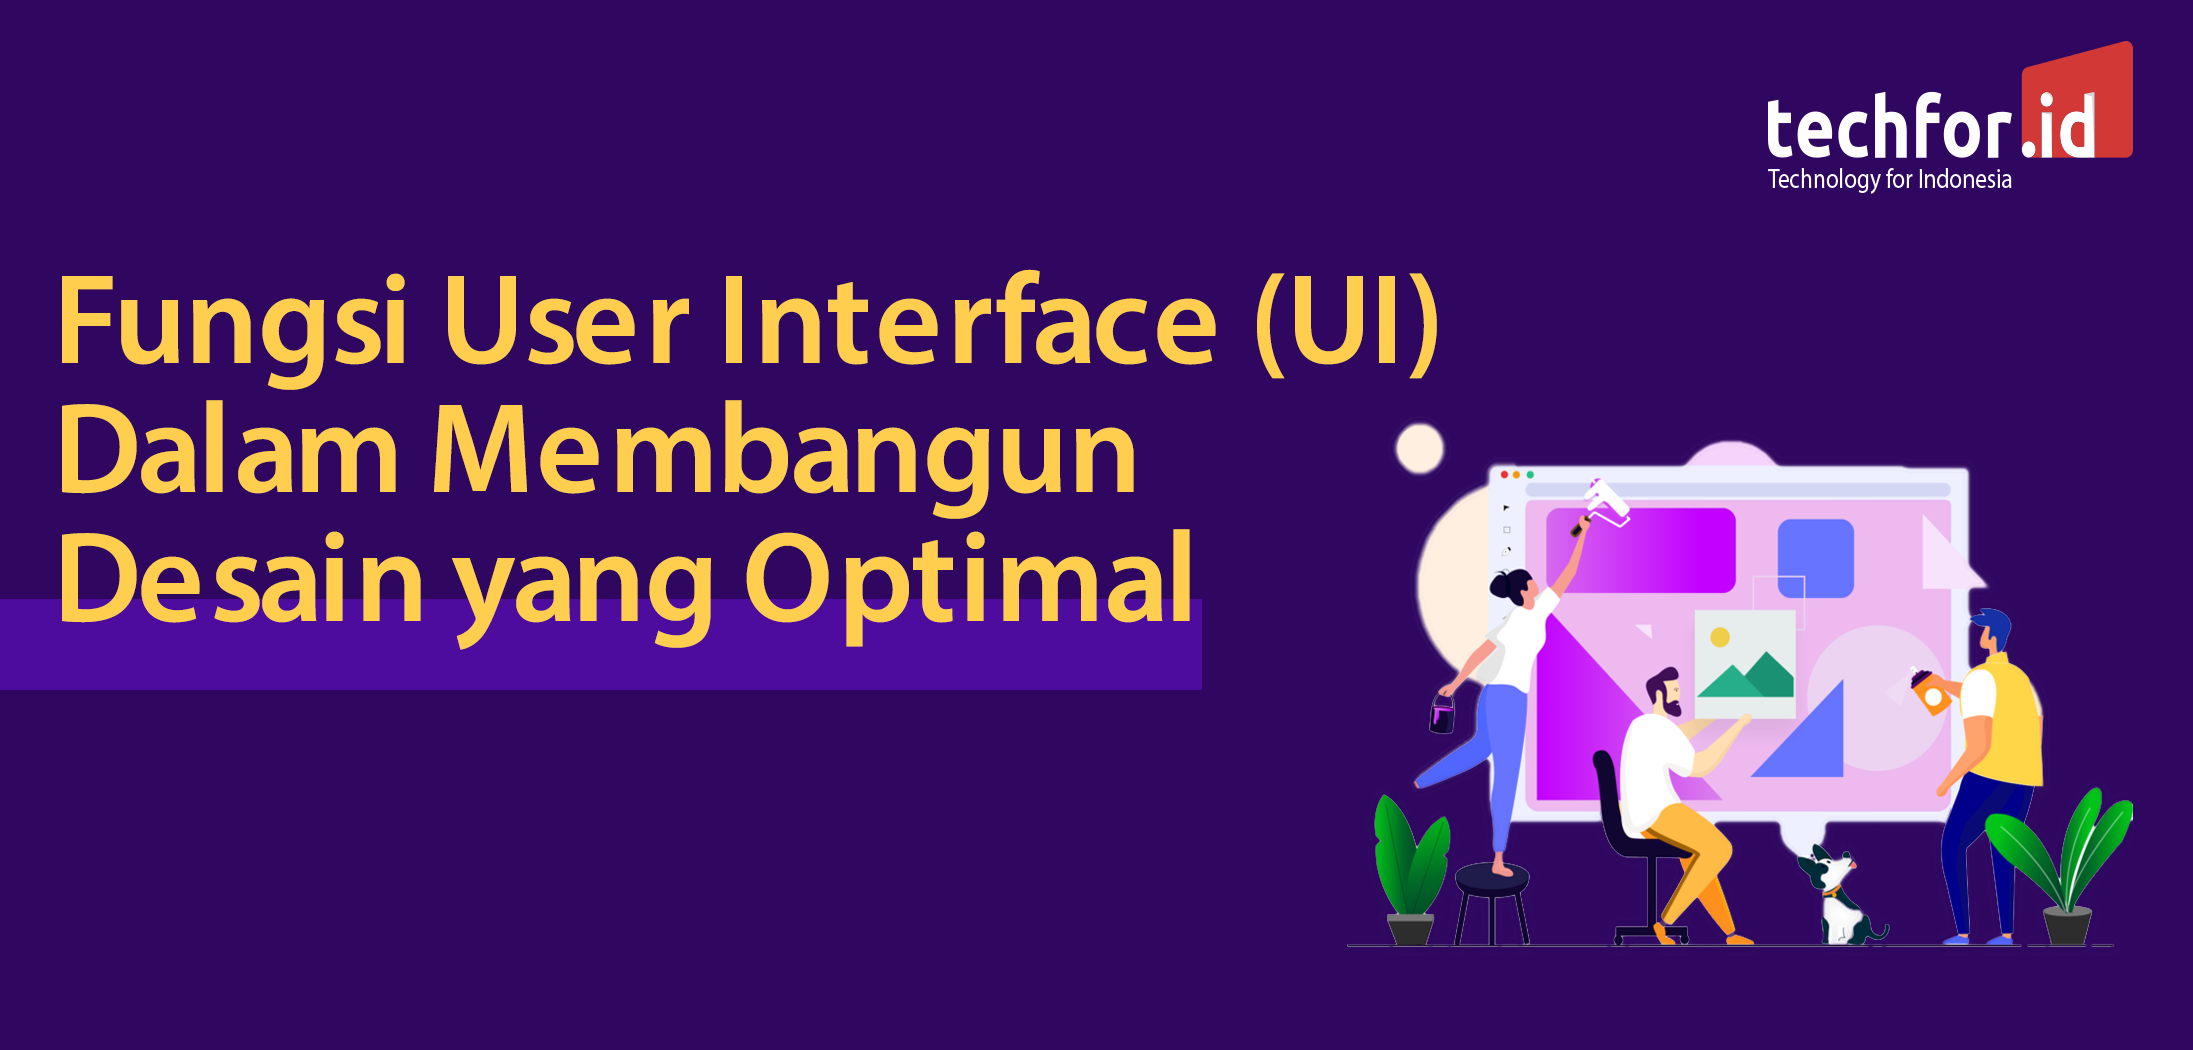 Fungsi User Interface (UI) dalam membangun Desain yang Optimal